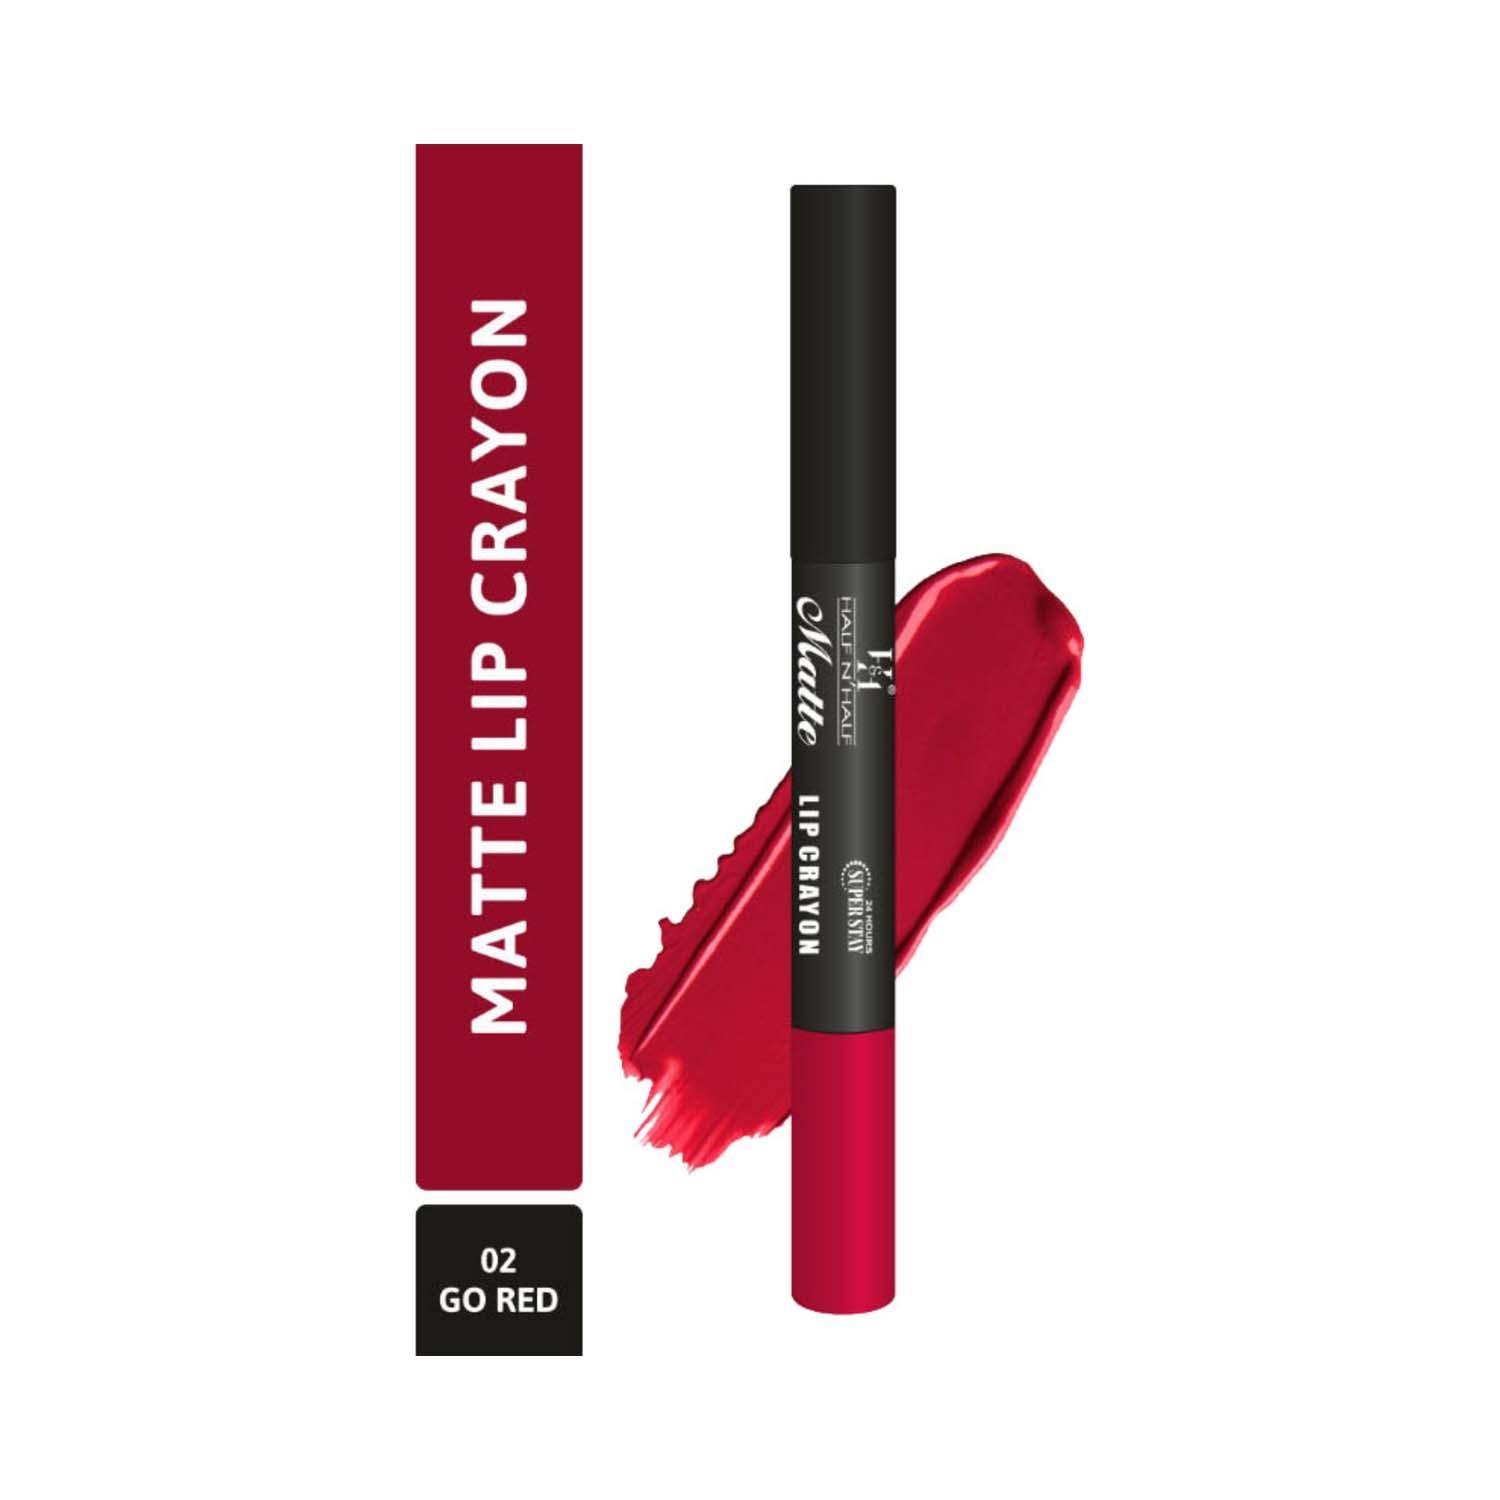 half n half matte velvet soft & long lasting 24h superstay lip crayon - 02 go red (3.5g)